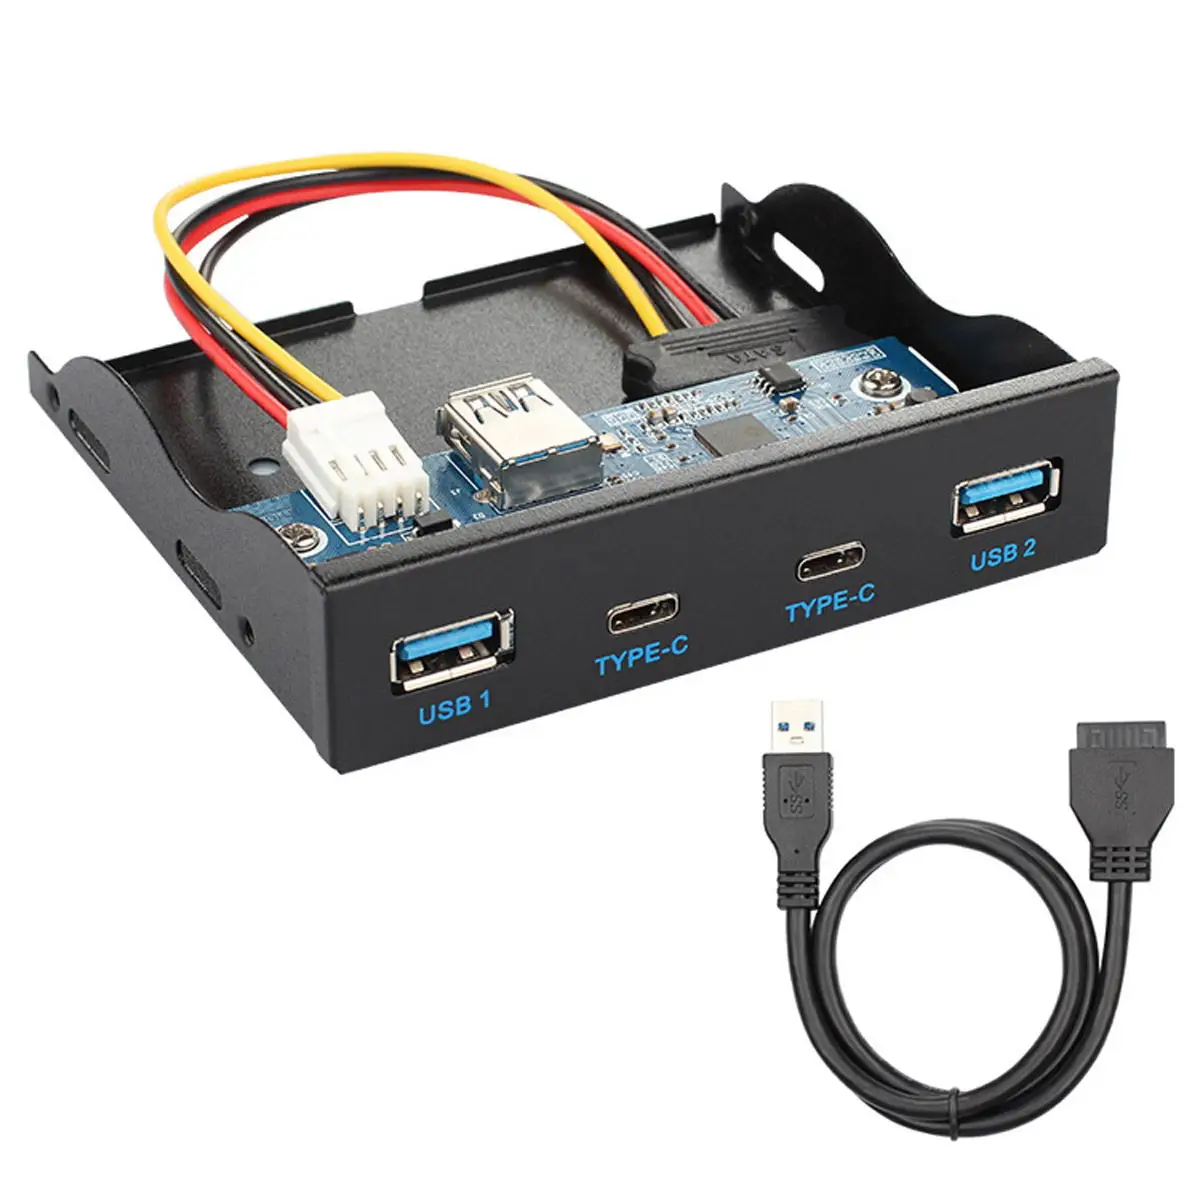 

Cablecc USB3.0 Type-C двойные порты USB 3,5 Type-A хаб с двумя портами Передняя панель для материнской платы 20-контактный кабель Шнур для 3,5-дюймового отсека флоппи